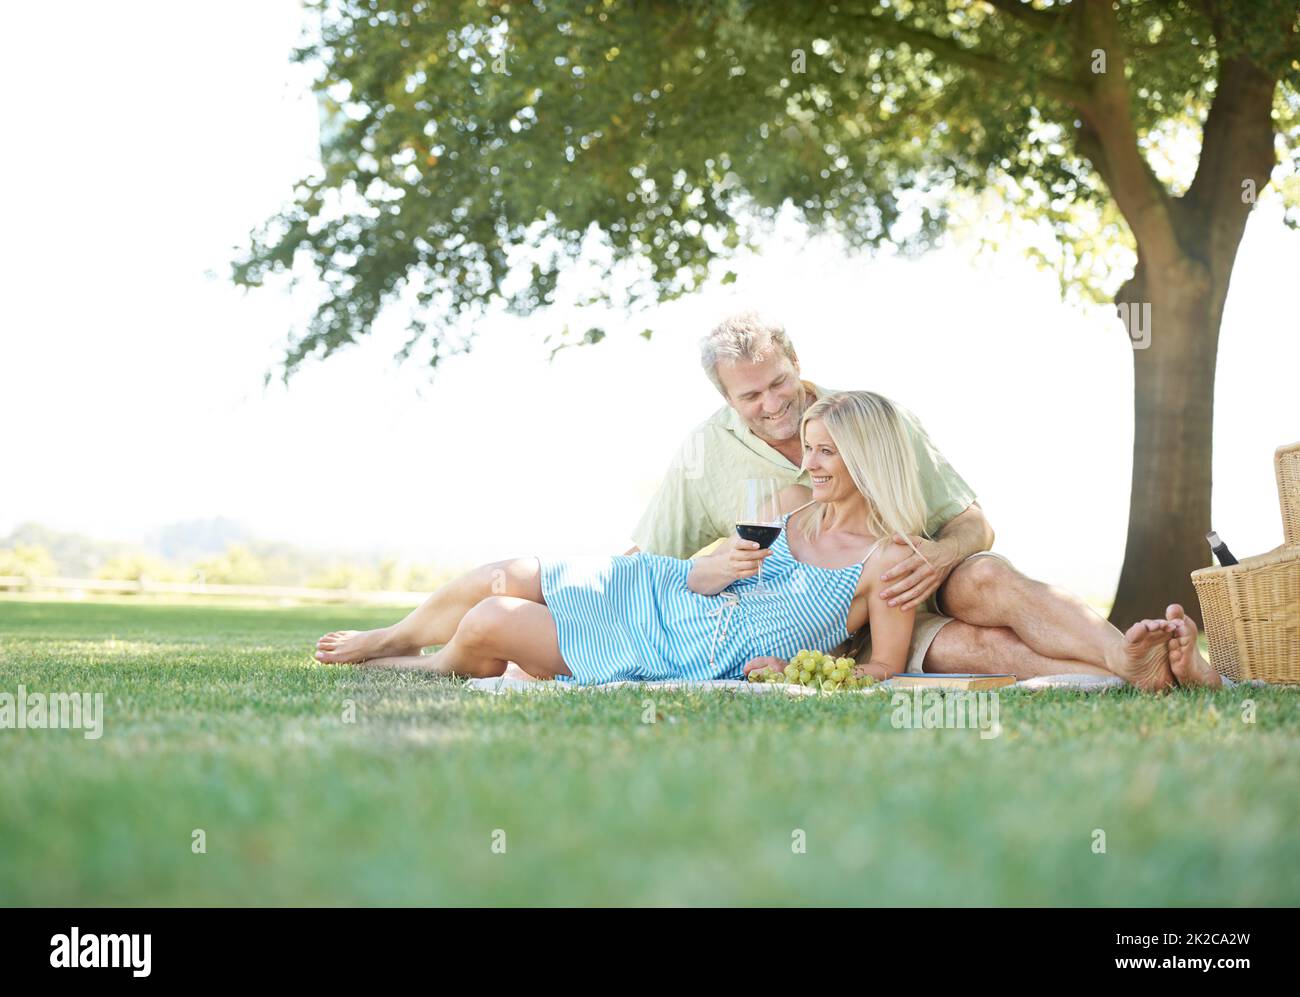 Nicht einmal die Aussicht ist mit Ihrer Schönheit vergleichbar. Ein lächelnder Ehemann und eine lächelnde Frau genießen ein gemütliches Picknick im Park. Stockfoto